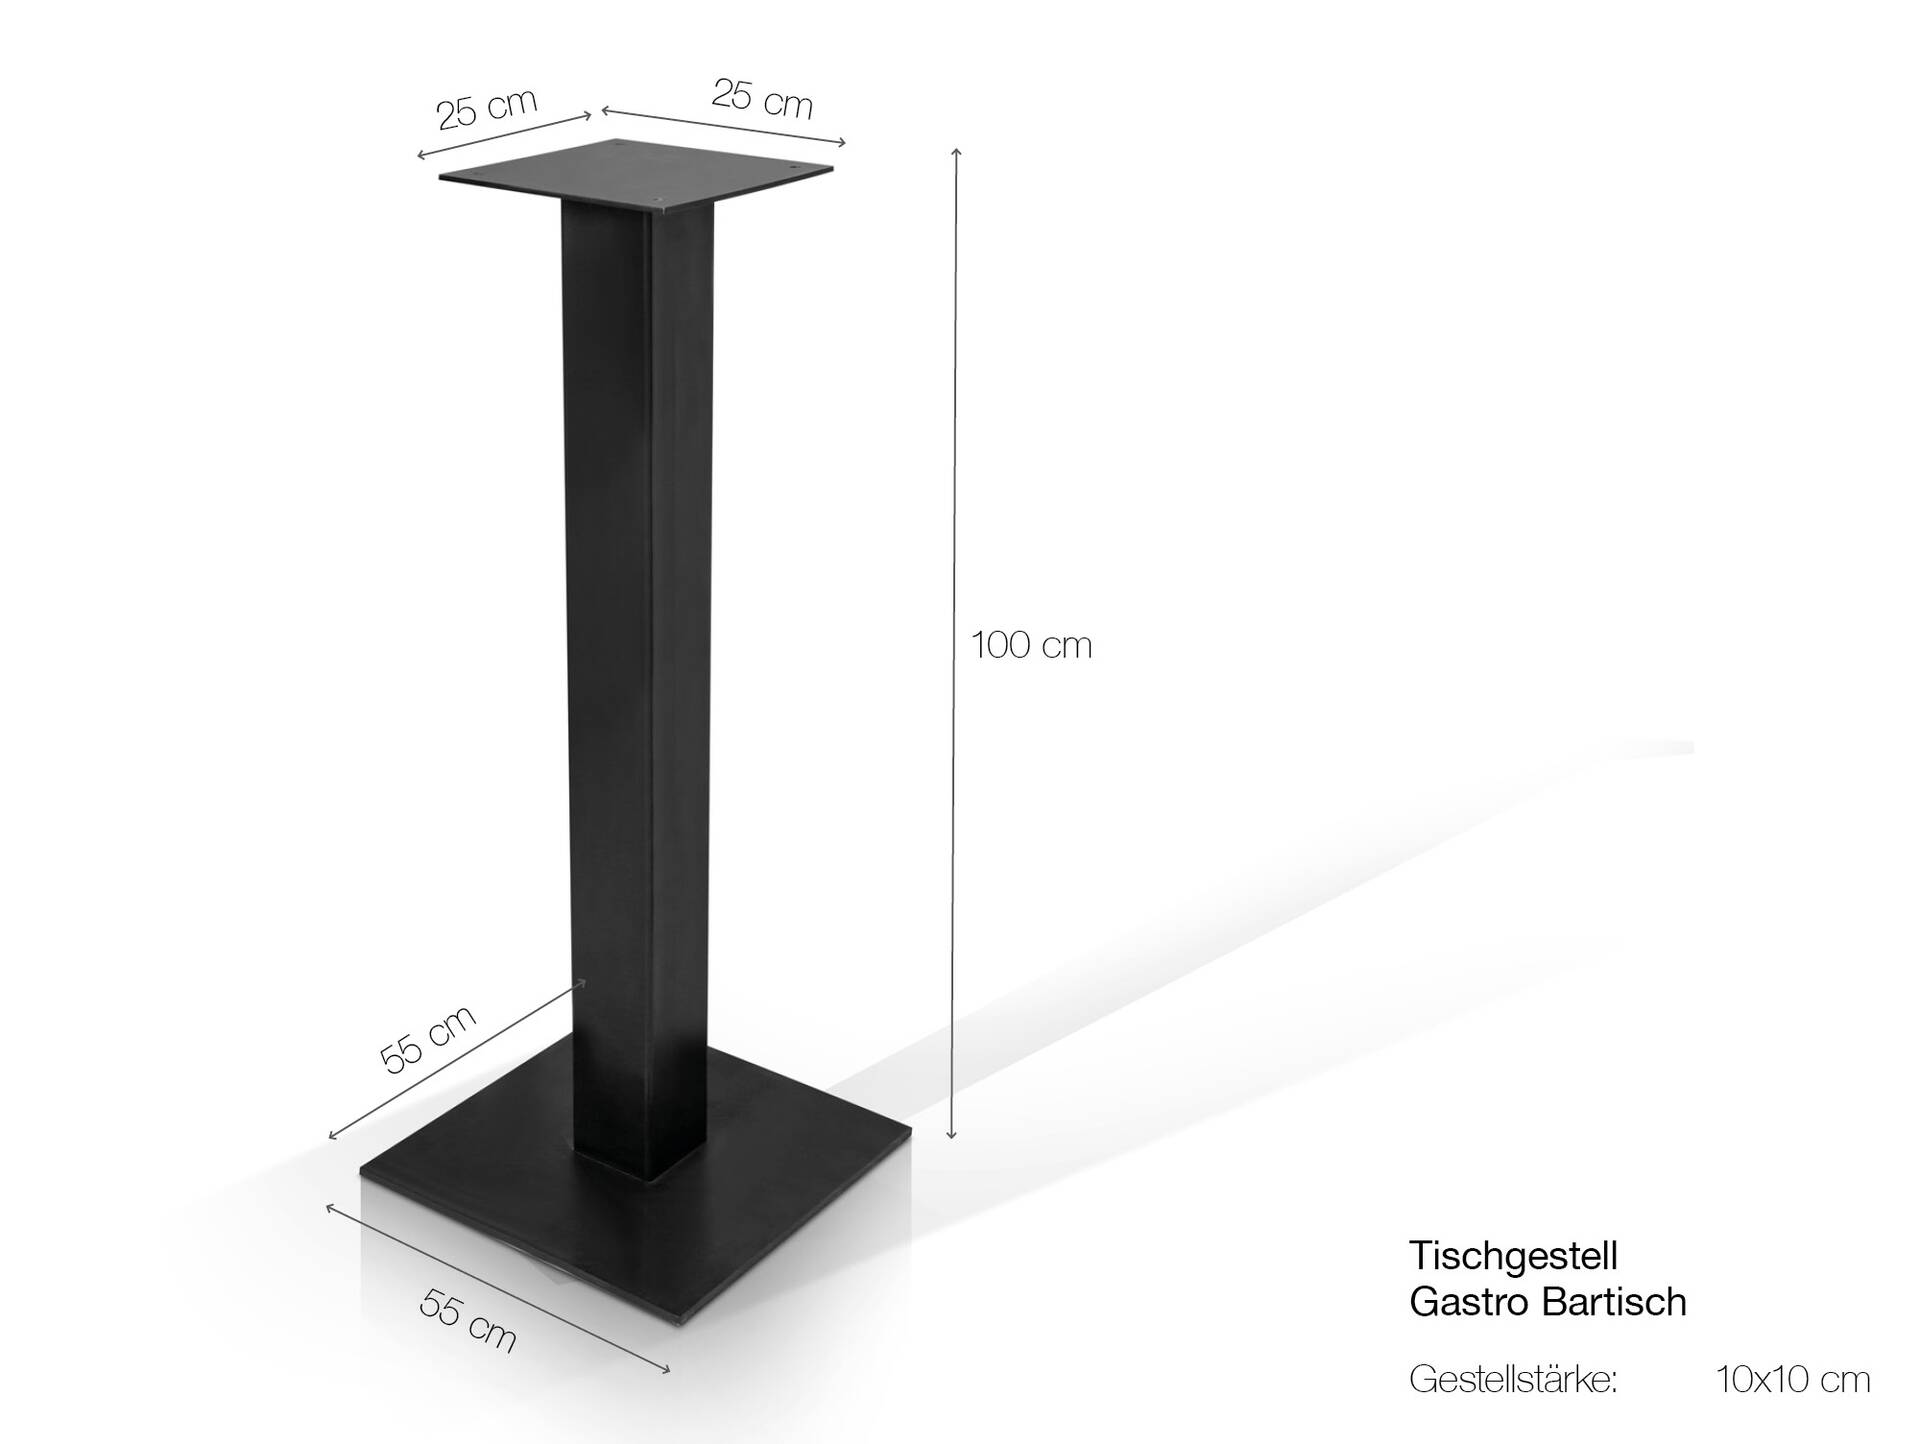 Tischgestell für GASTRO Bartisch, Material Stahl, schwarz 